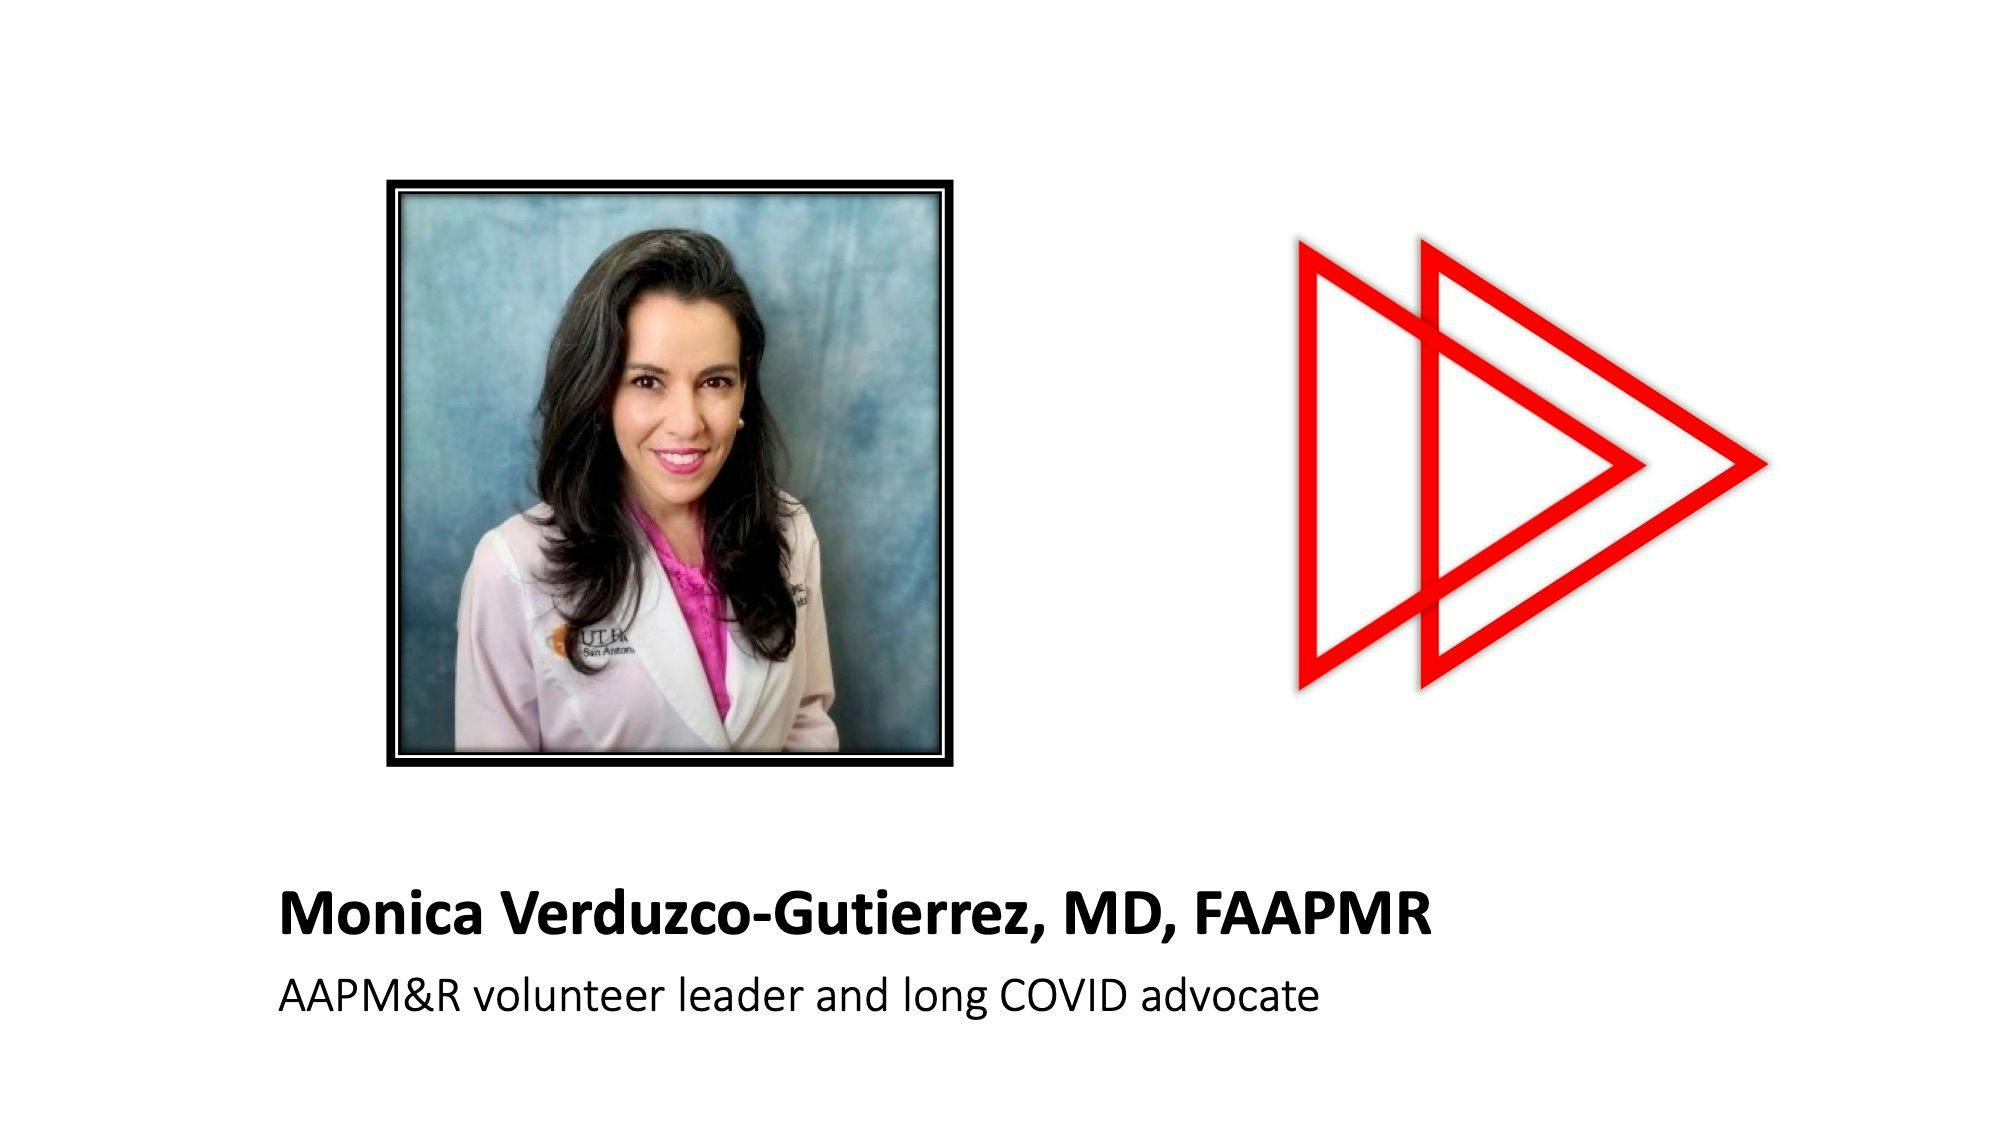 Monica Verduzco-Gutierrez, MD, FAAPMR gives expert advice